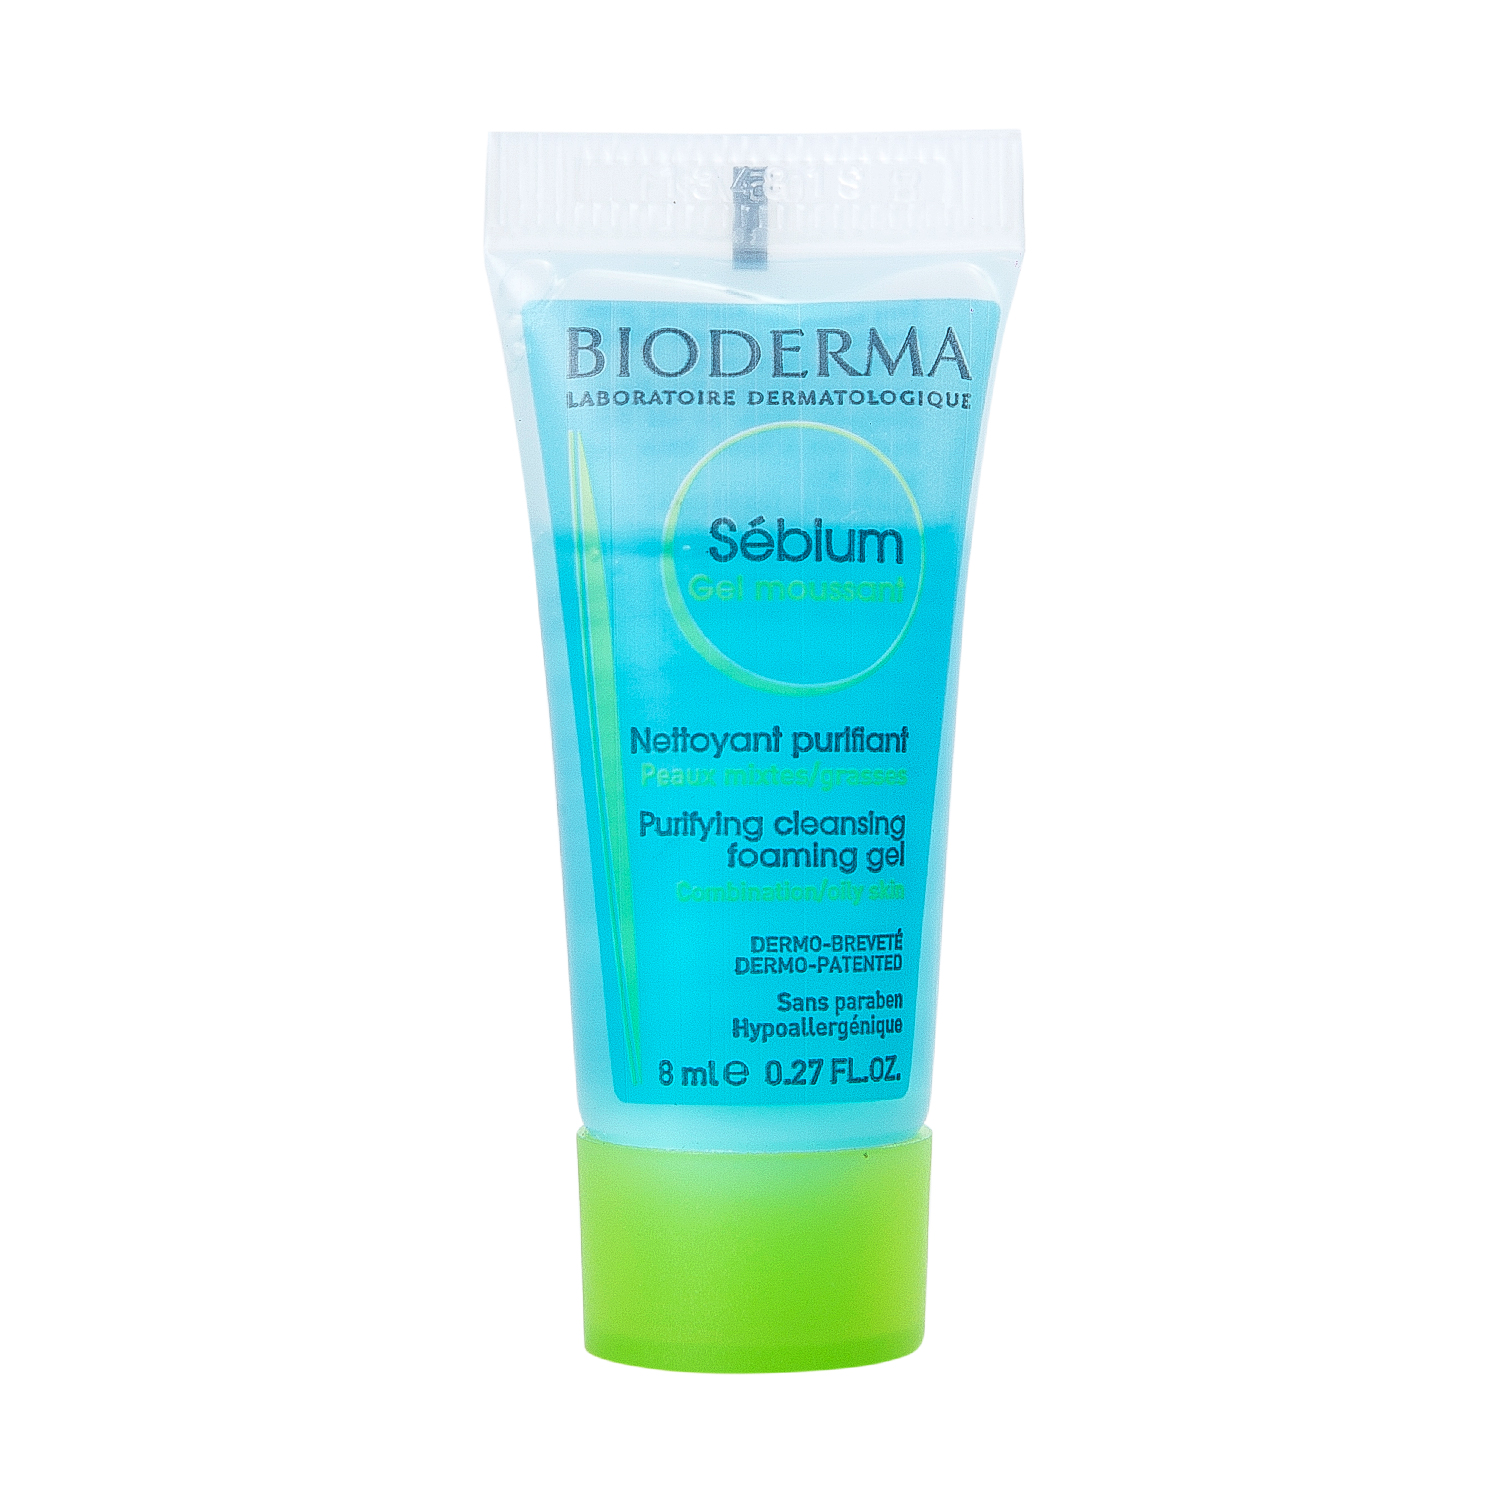 Bioderma - Gel rửa mặt tạo bọt cho da hỗn hợp và da dầu Bioderma Sebium Gel Moussant Mini Size 8ml